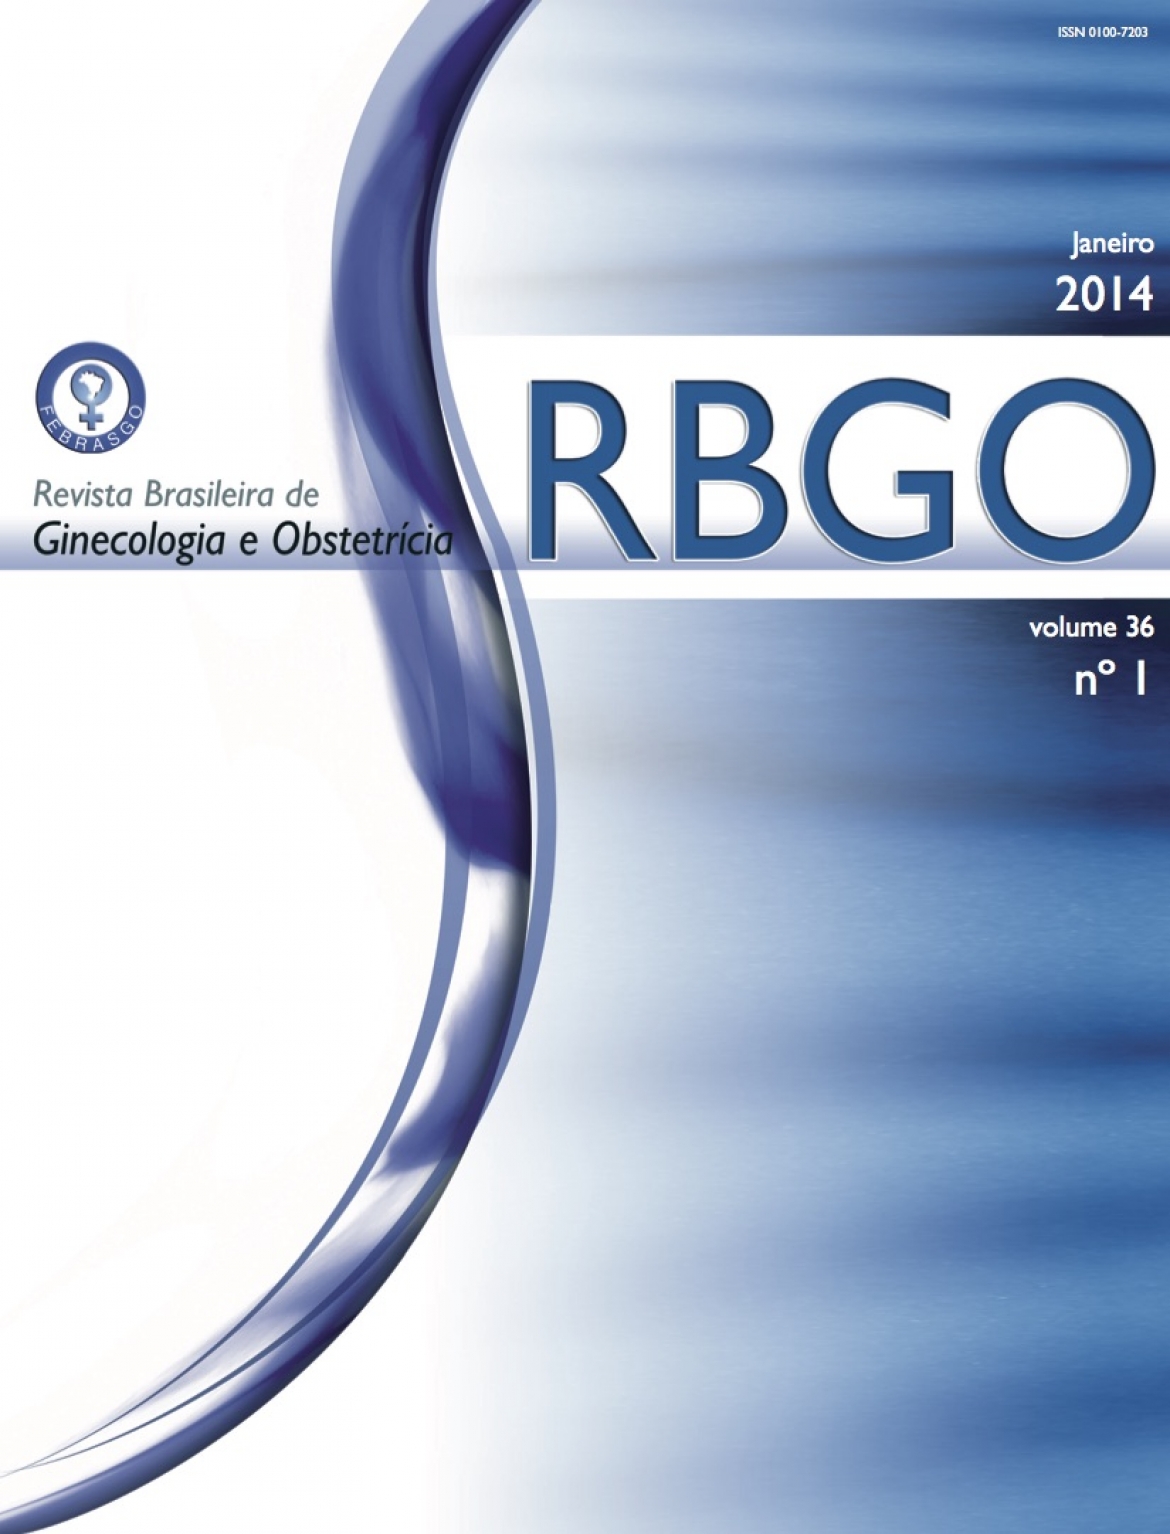 Revista Brasileira de Ginecologia e Obstetrícia – 2014 / Vol. 36 n°1